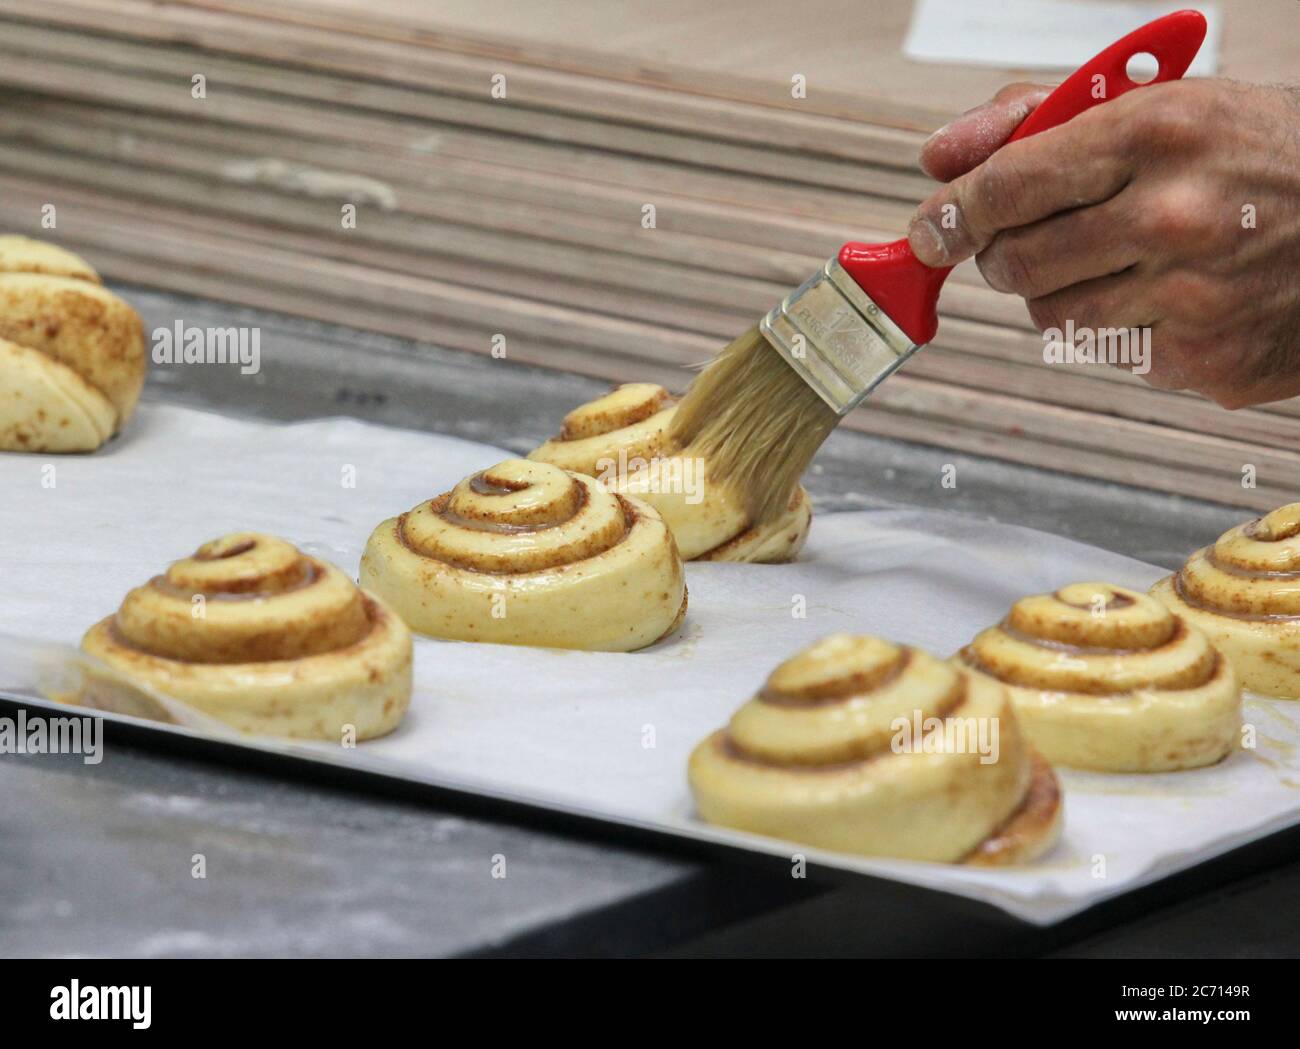 Les petits pains à la cannelle en forme sont autorisés à léaven avant de cuire, tandis que le glaçage aux œufs est brossé. Photographié dans une boulangerie Banque D'Images